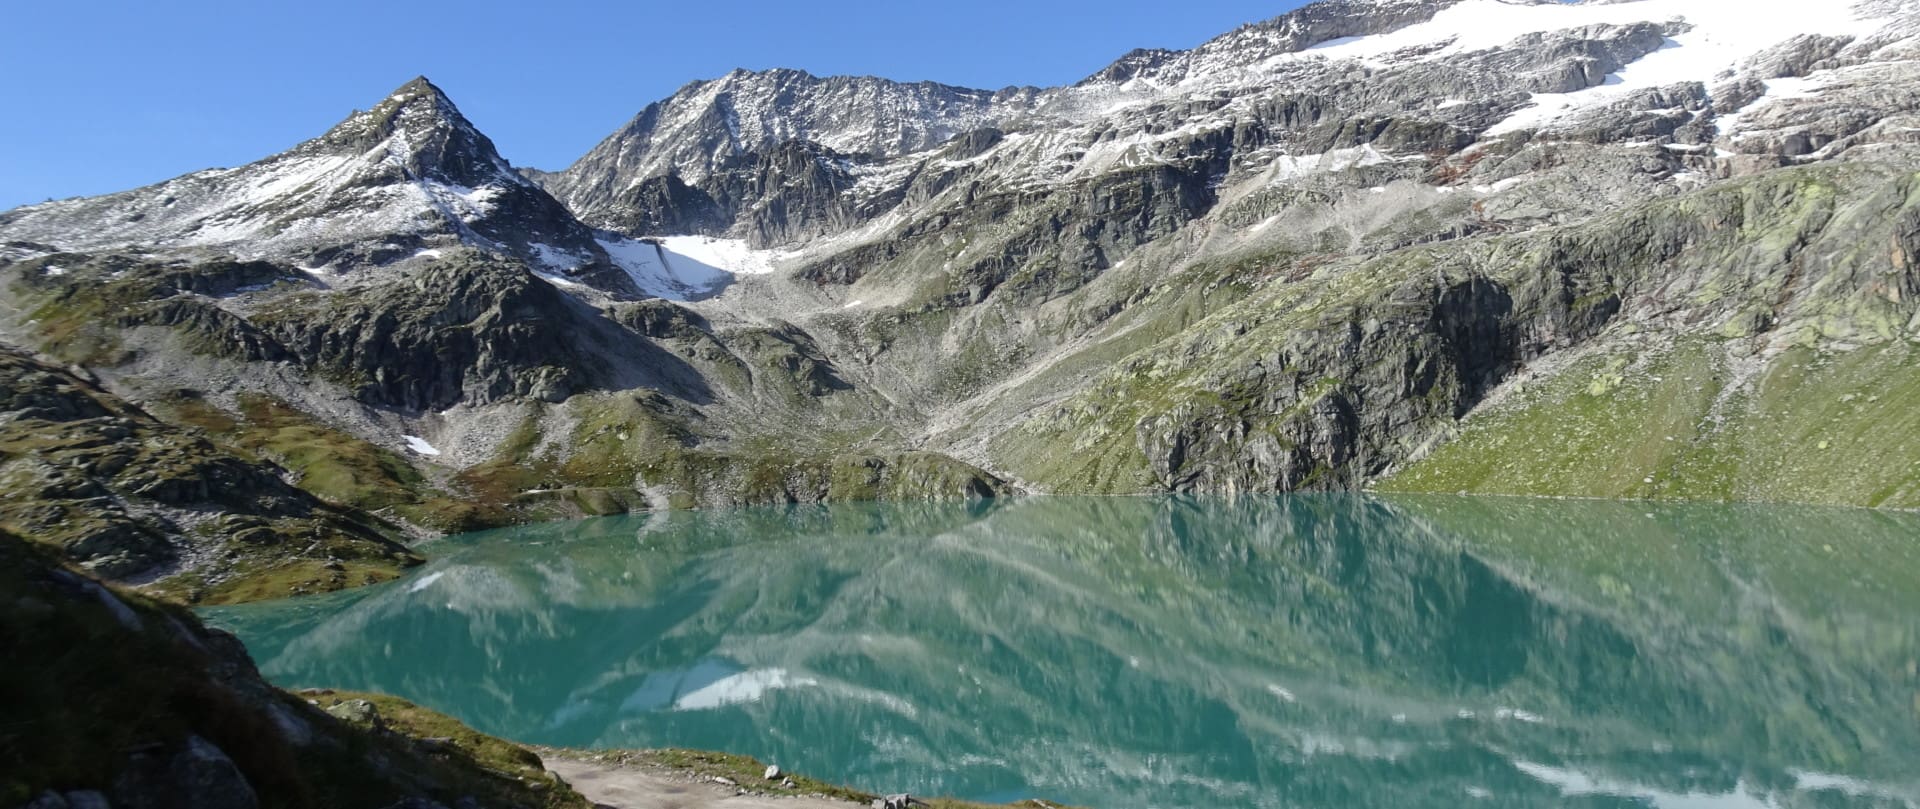 Ein kristallklarer Gebirgssee spiegelt die umliegenden steilen Gipfel und schneebedeckten Hänge unter einem hellblauen Himmel im Weißsee-Gebiet